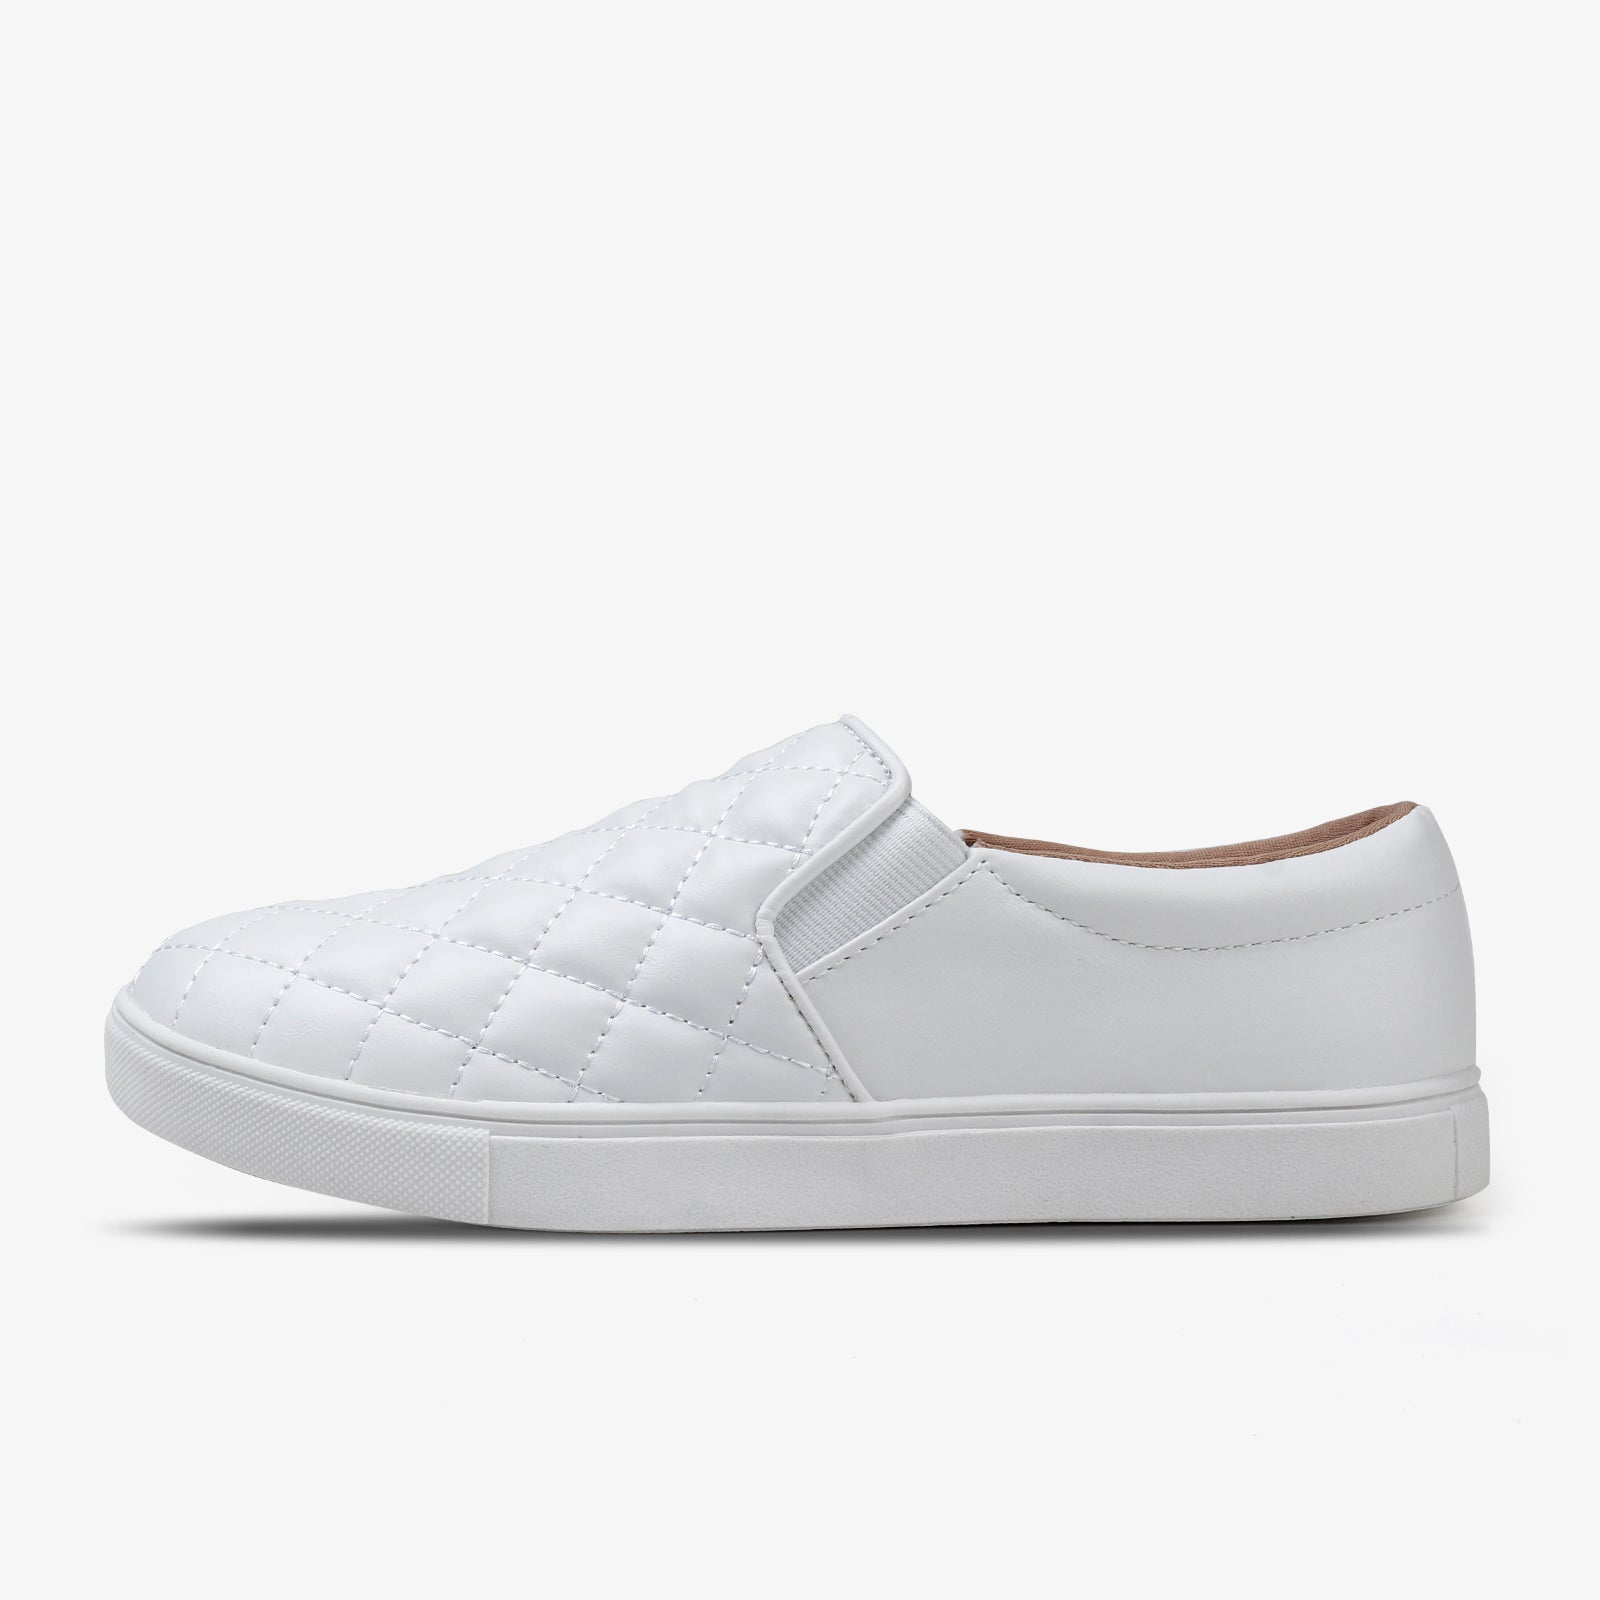 neerhalen Ontcijferen zak STQ Loafers for Women Memory Foam Slip On Sneakers Comfort Fall Shoes